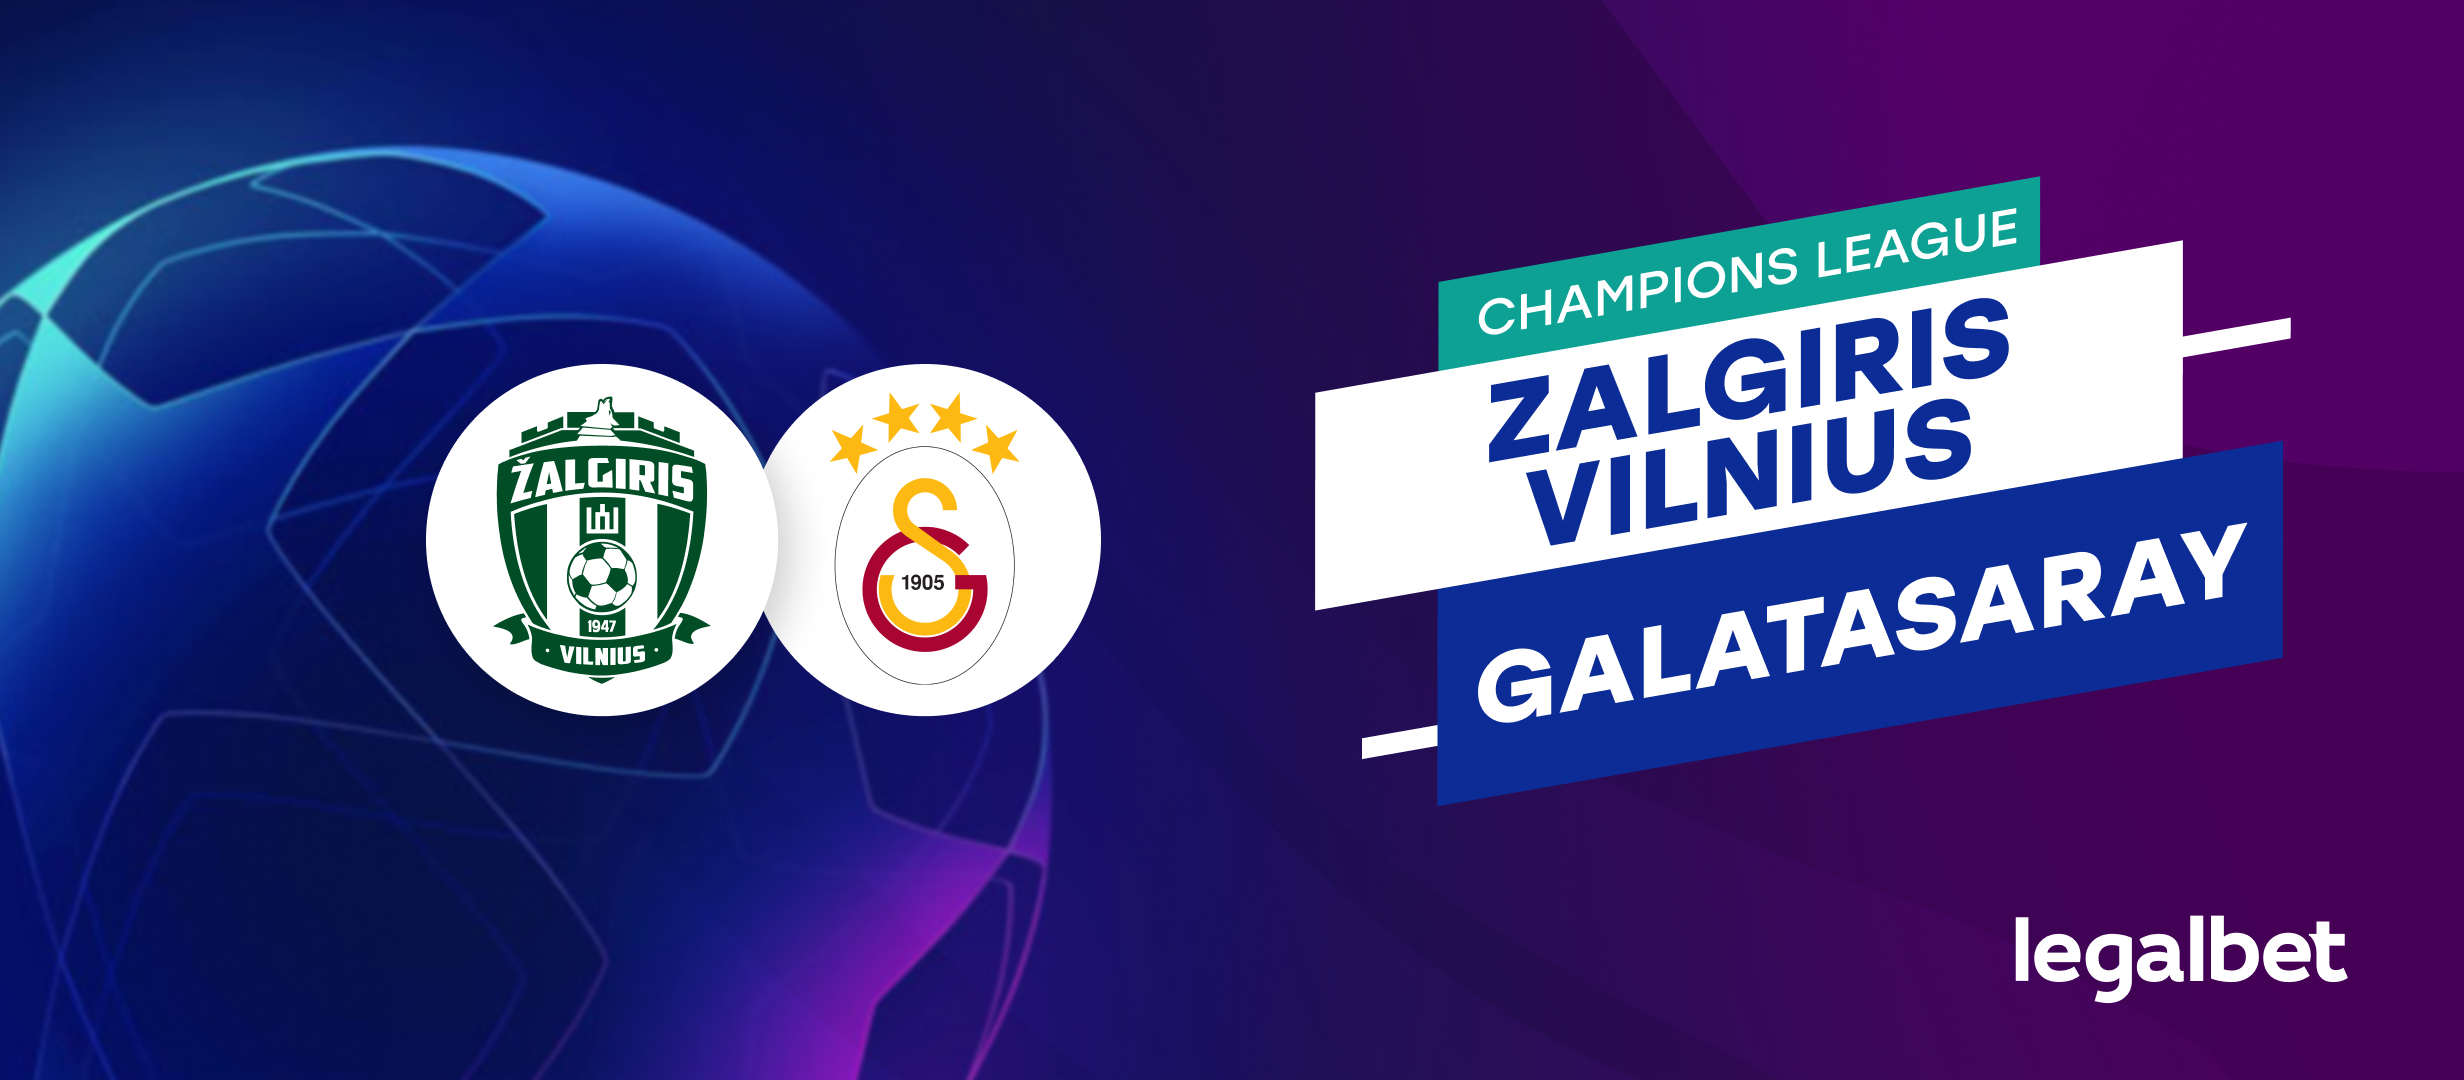 Zalgiris Vilnius - Galatasaray, ponturi la pariuri preliminariile Champions League